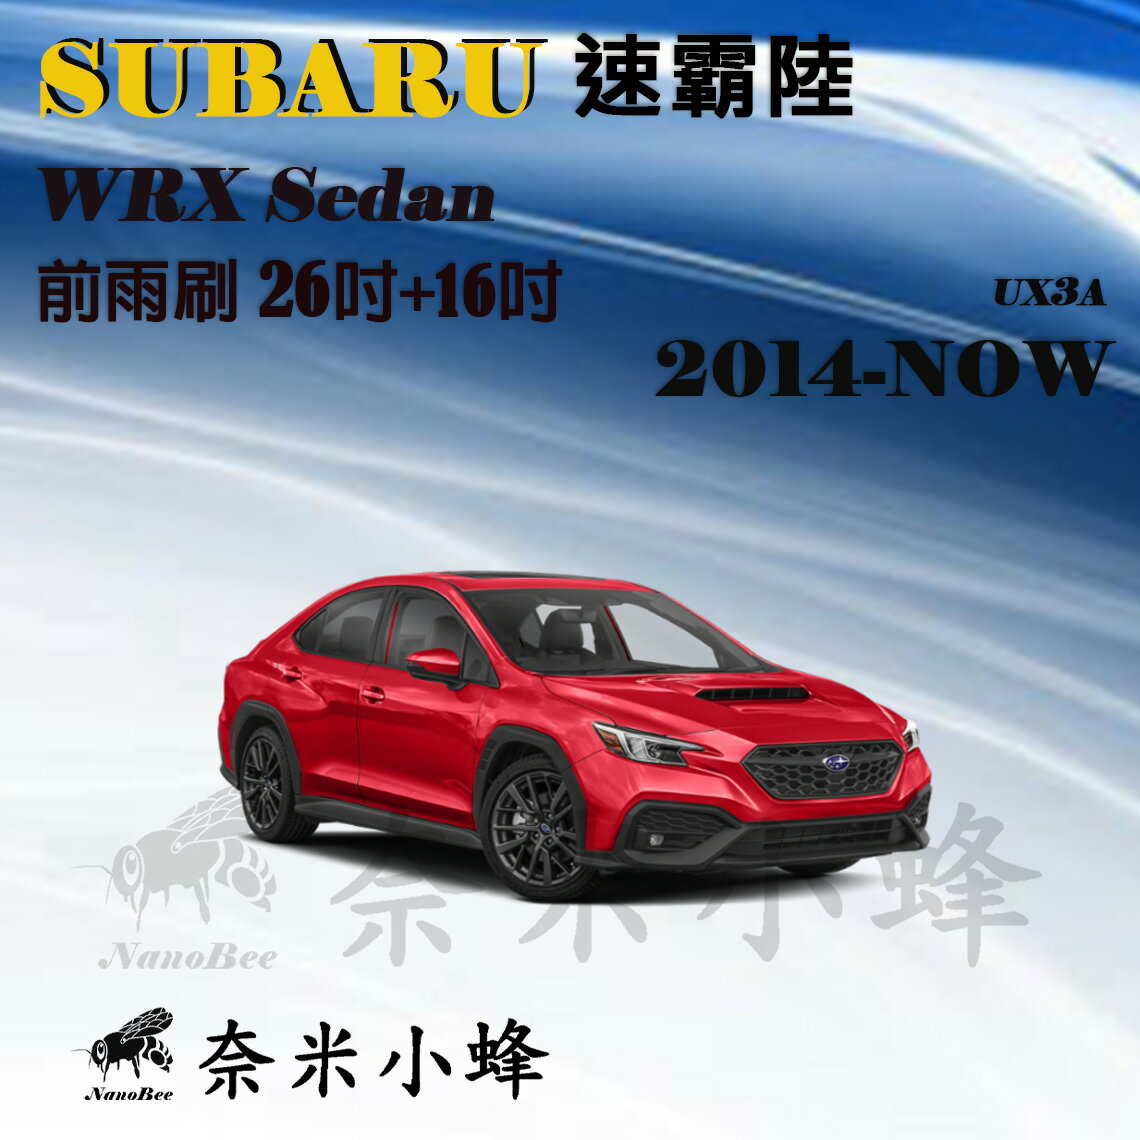 Subaru 速霸陸 WRX 2014-NOW雨刷 WRX雨刷 德製3A膠條 軟骨雨刷【奈米小蜂】